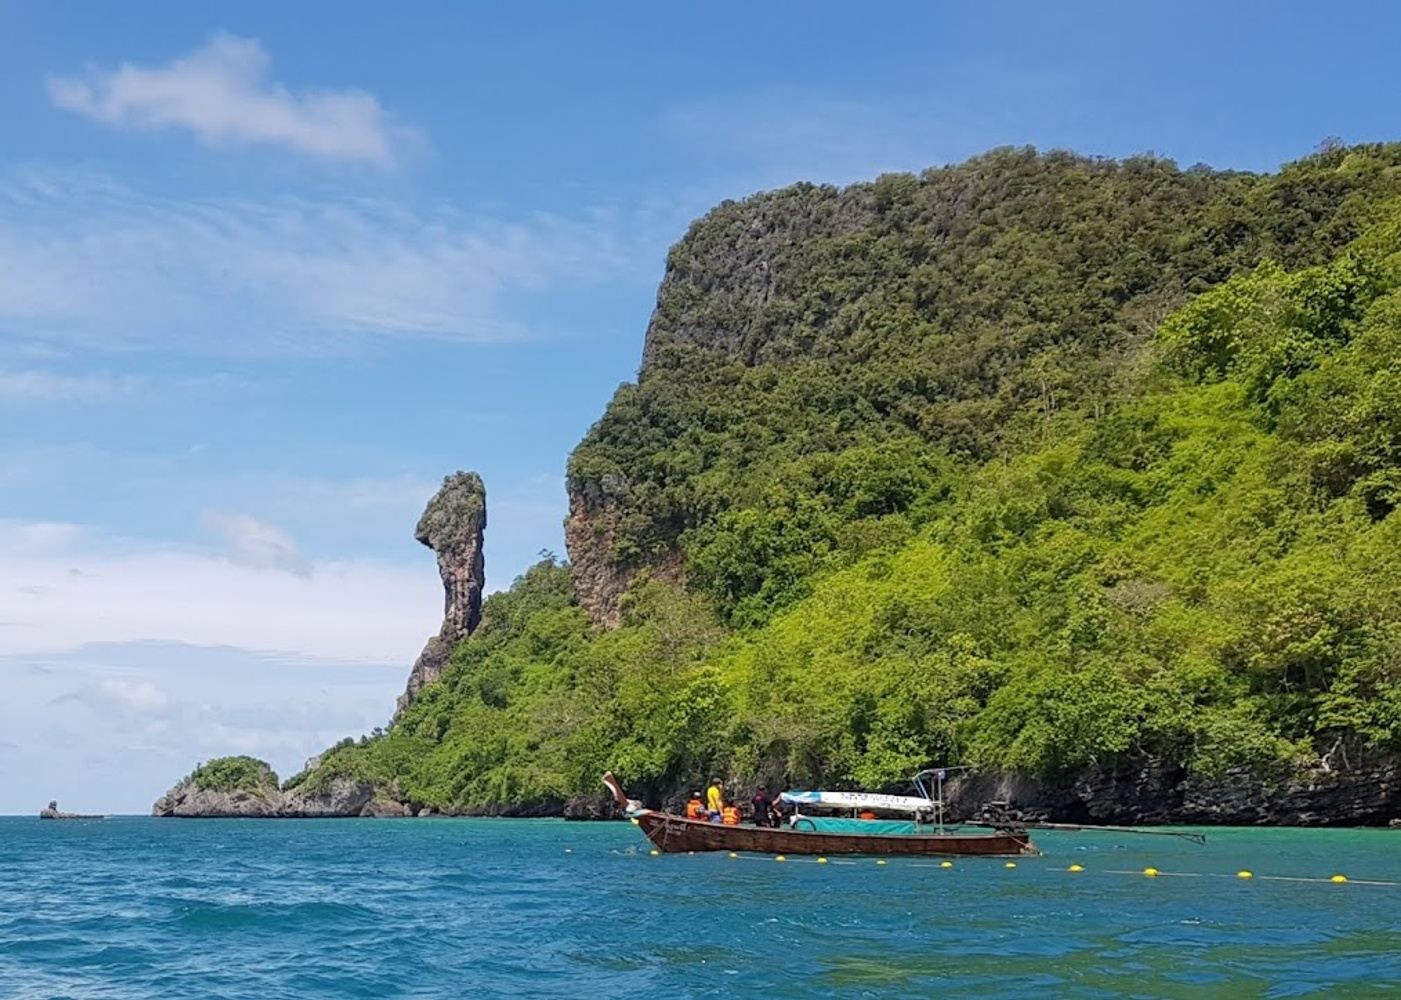 Krabi 4 Islands Day Tour by Speedboat